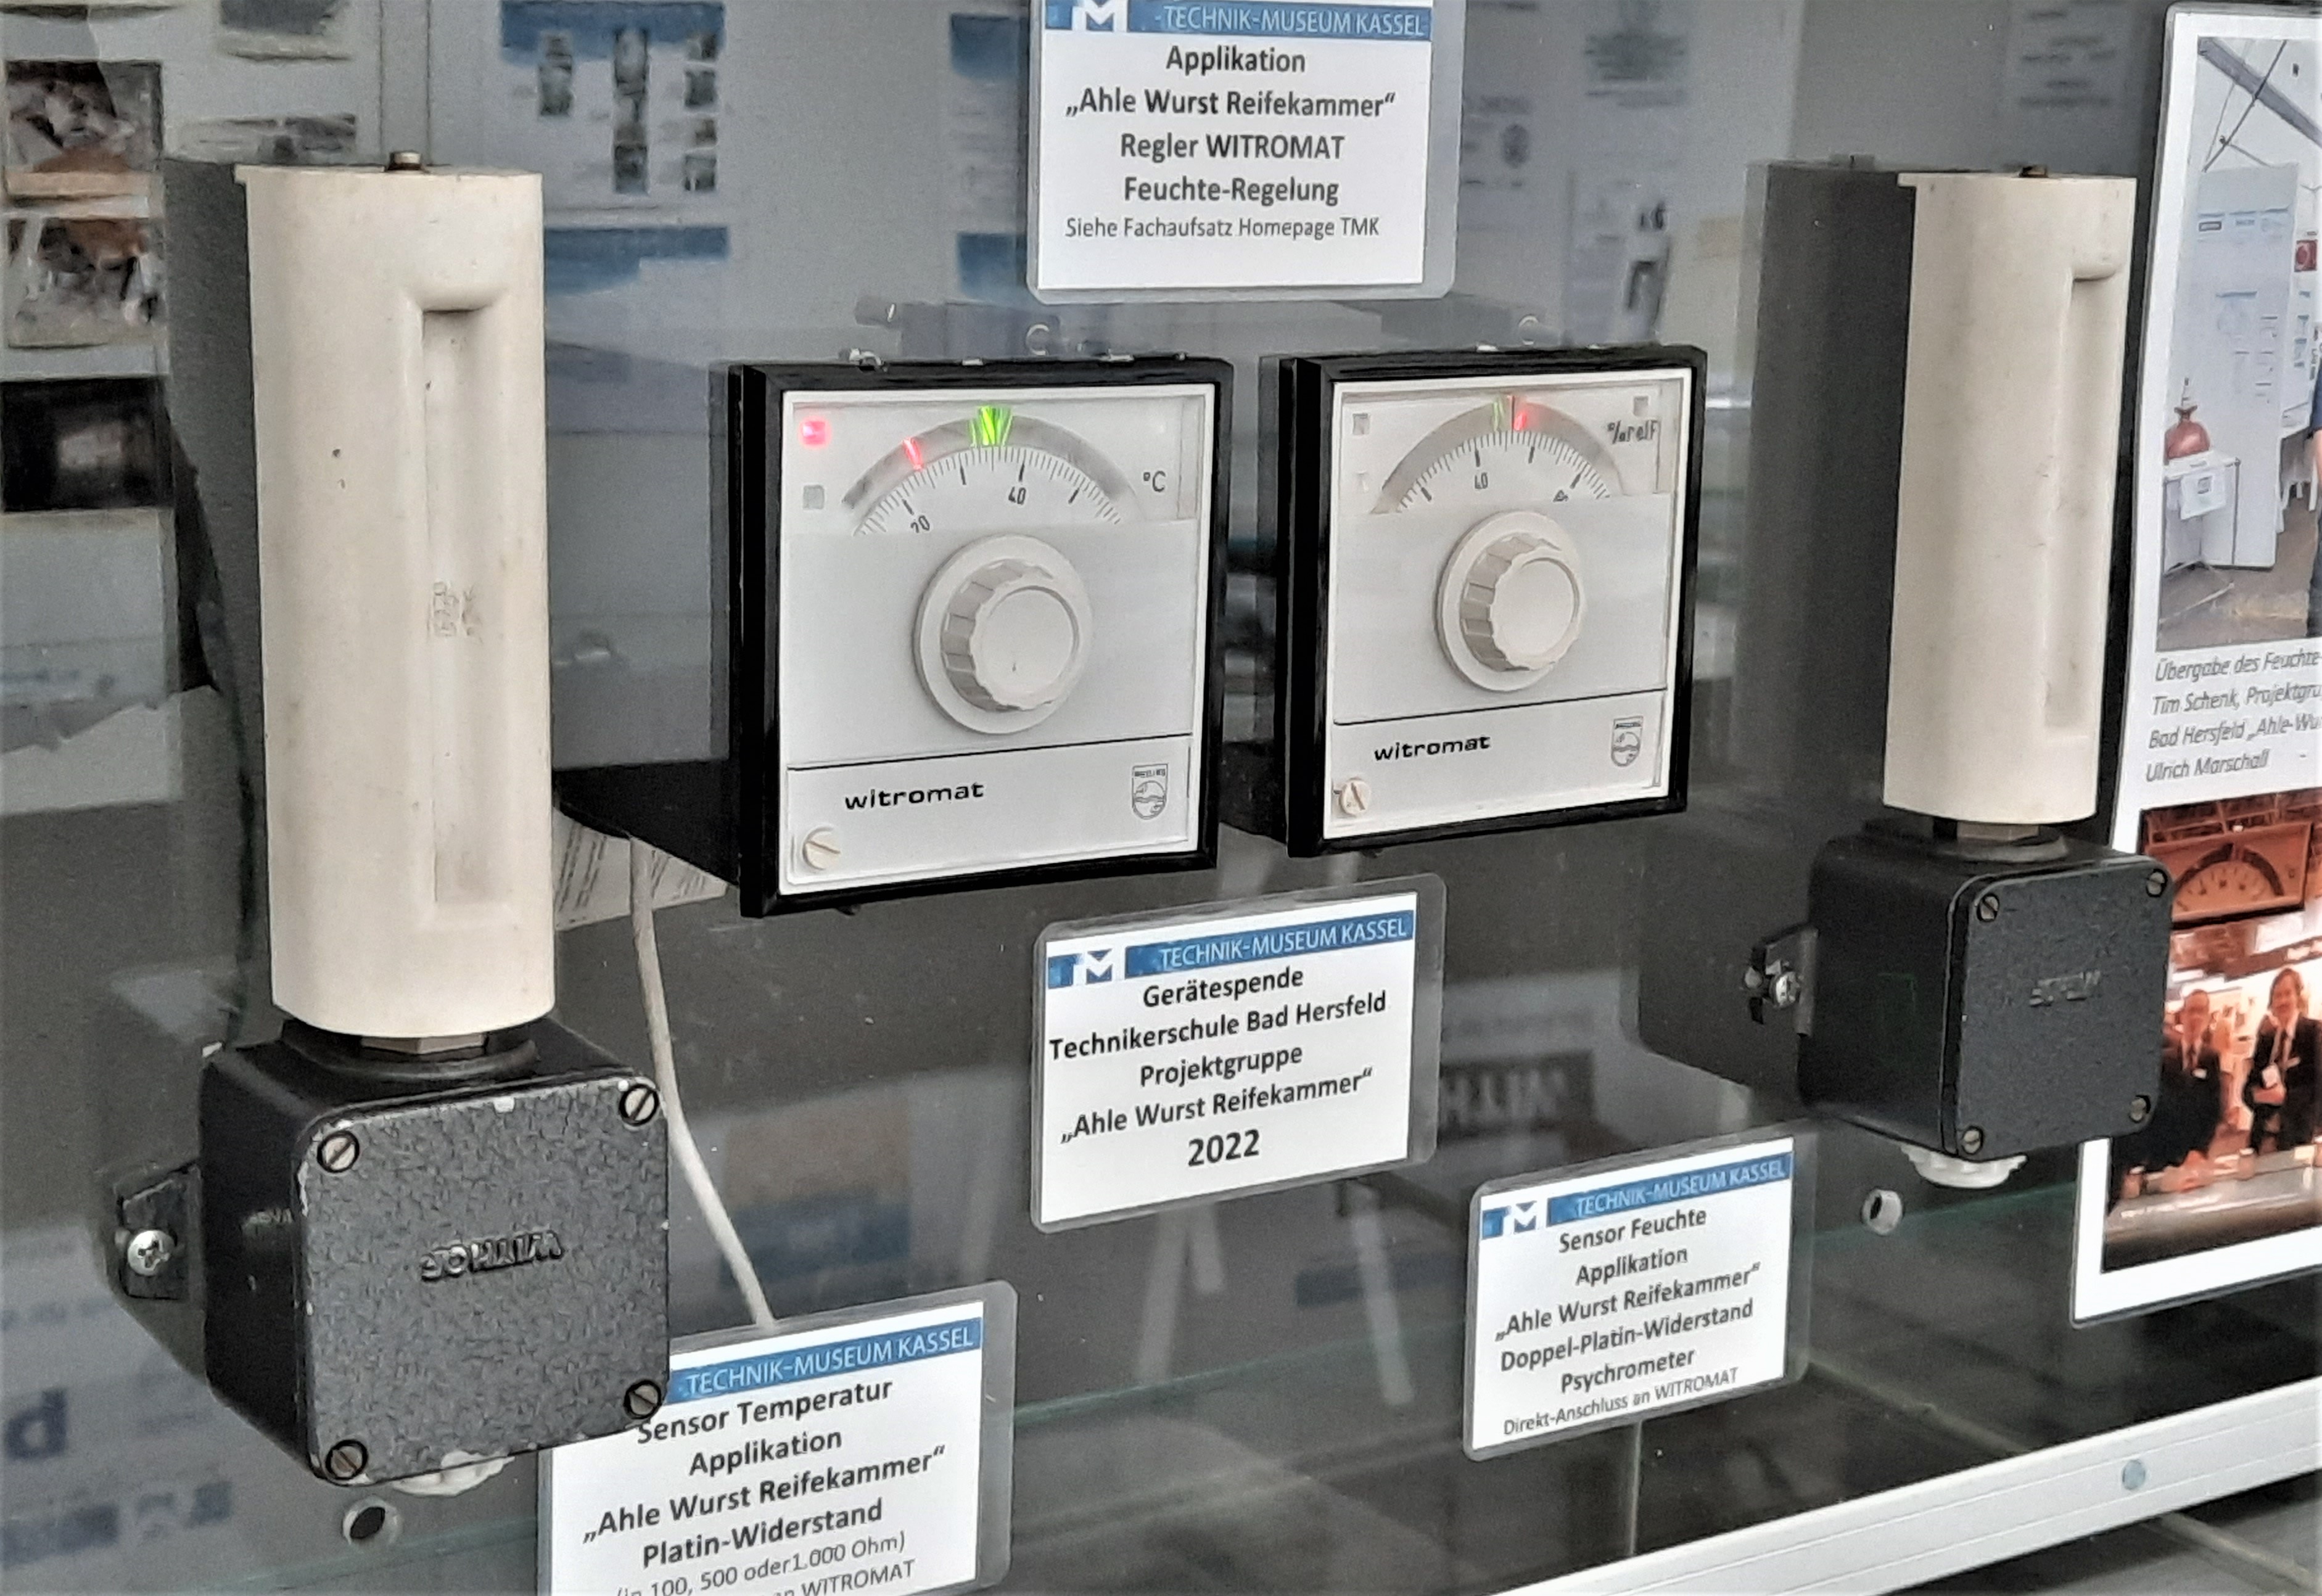 Foto einer im TMK ausgestellten Demoanlage der hier beschriebenen MSR Technik: Zwei WITROMAT-Regler und zwei Sensoren für Feuchte und Temperatur zur Klima-Regelung einer Wurst-Reifekammer